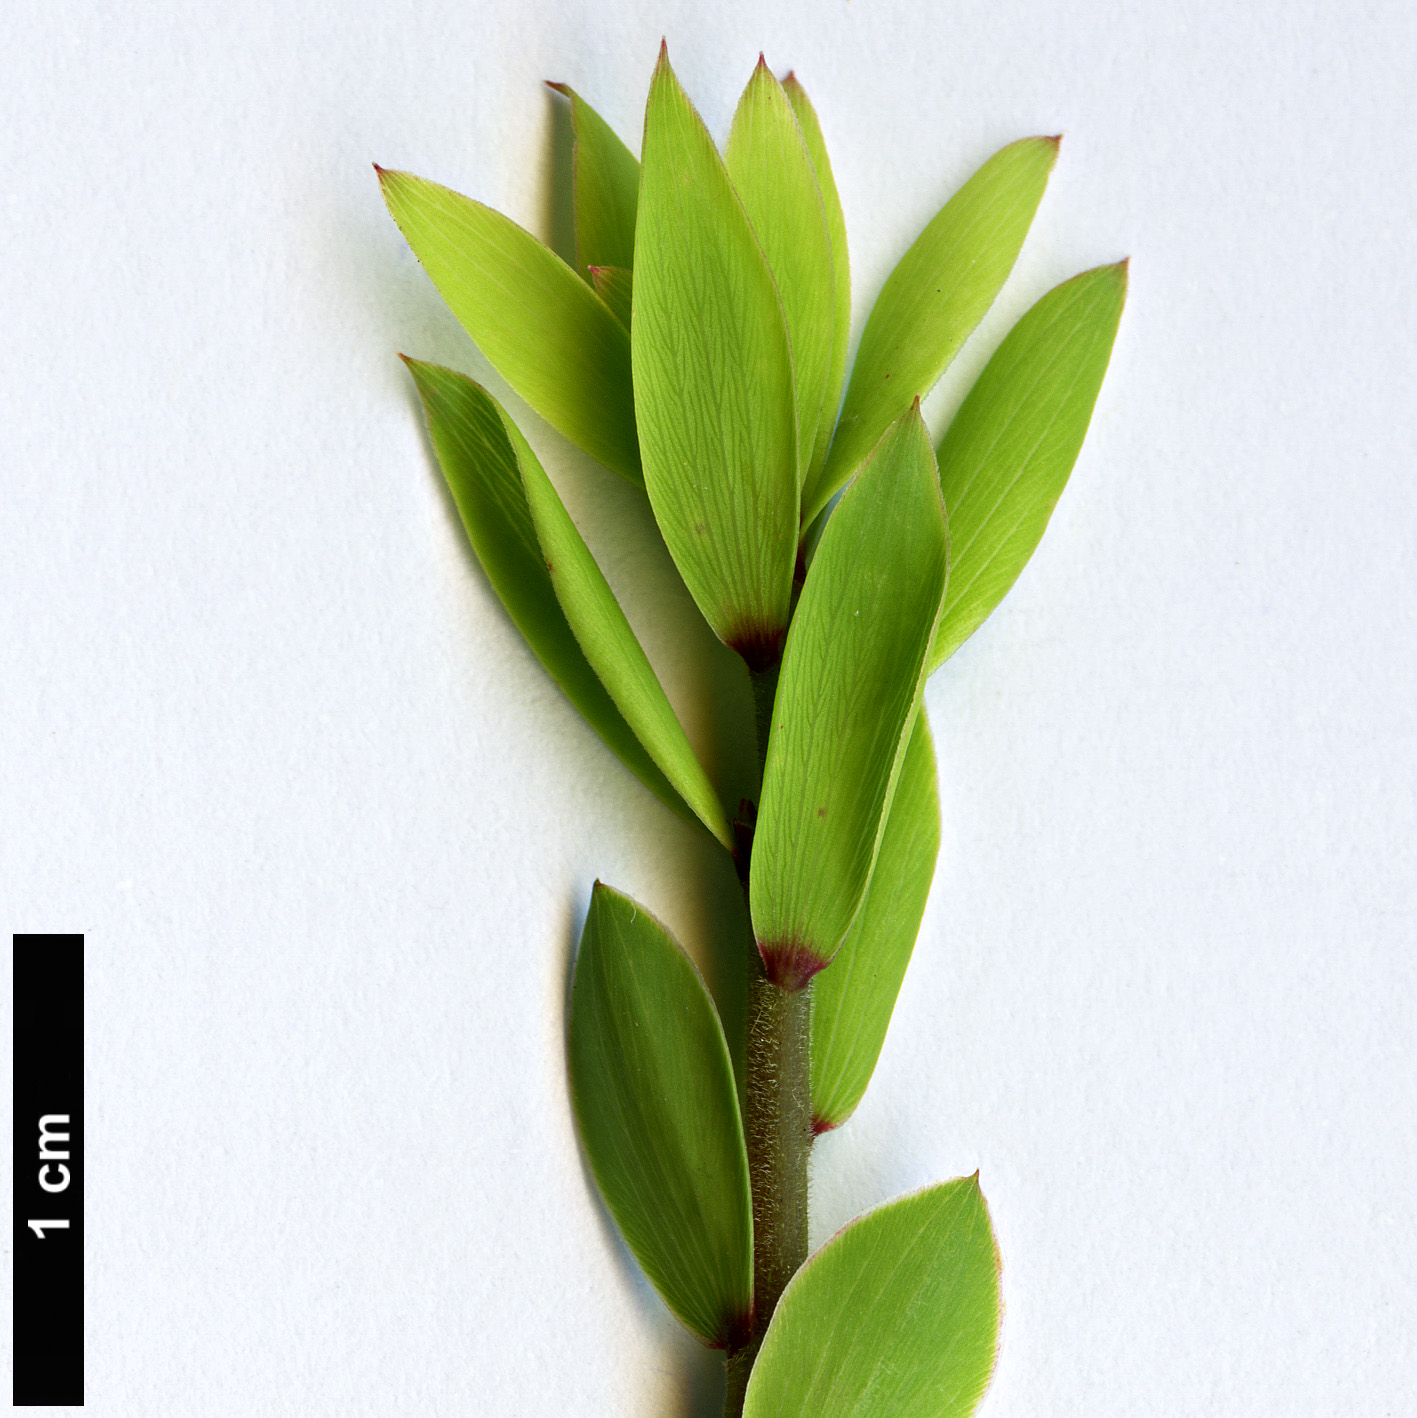 High resolution image: Family: Ericaceae - Genus: Leucopogon - Taxon: fasciculatus